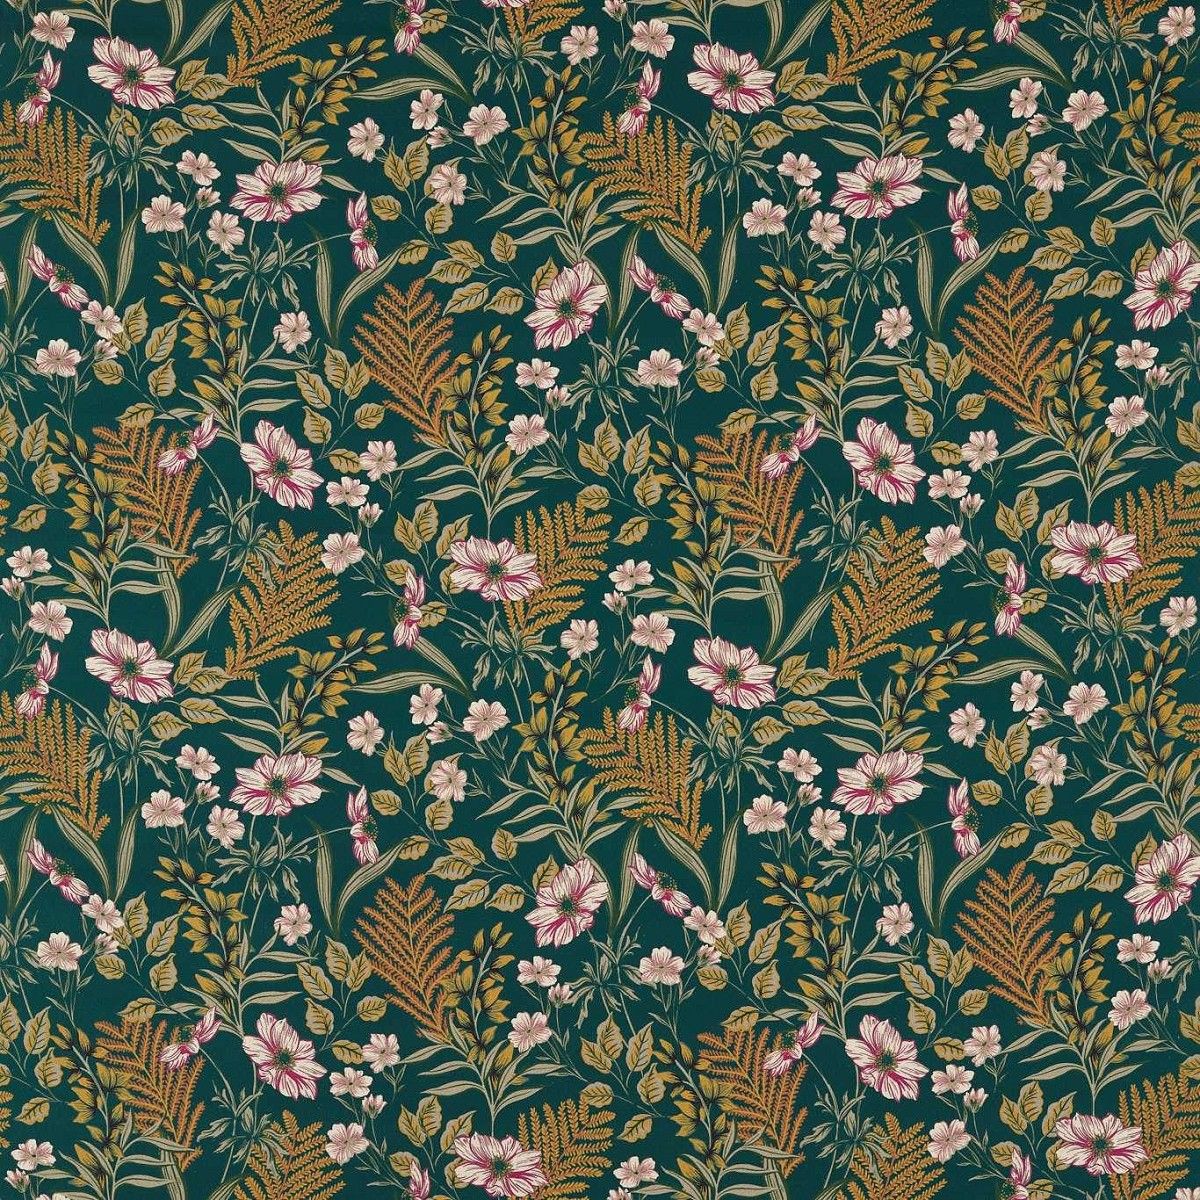 Hazelbury Forest Fabric by Studio G